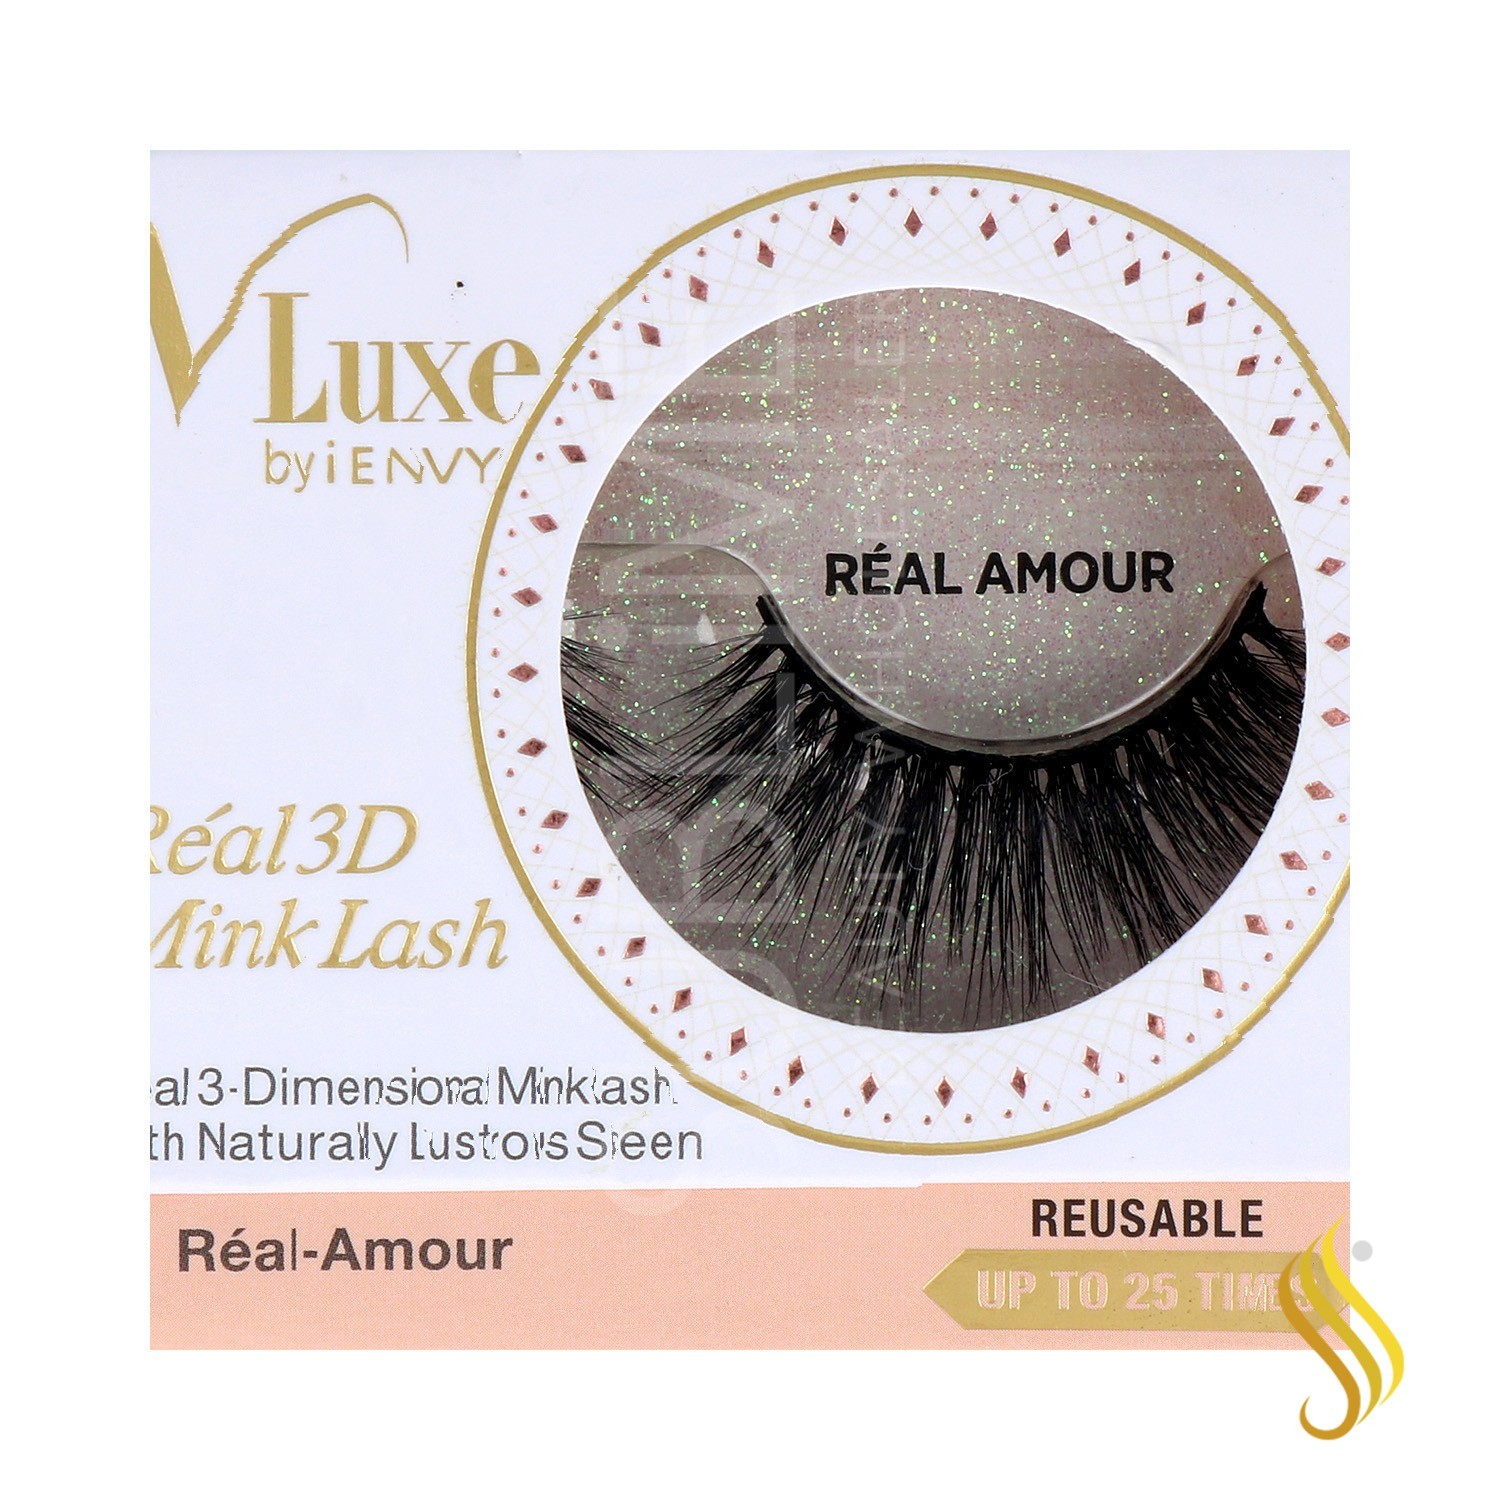 I Envy V Luxe 3D Realmink Lash/Pestana Real Amour (Vler04)